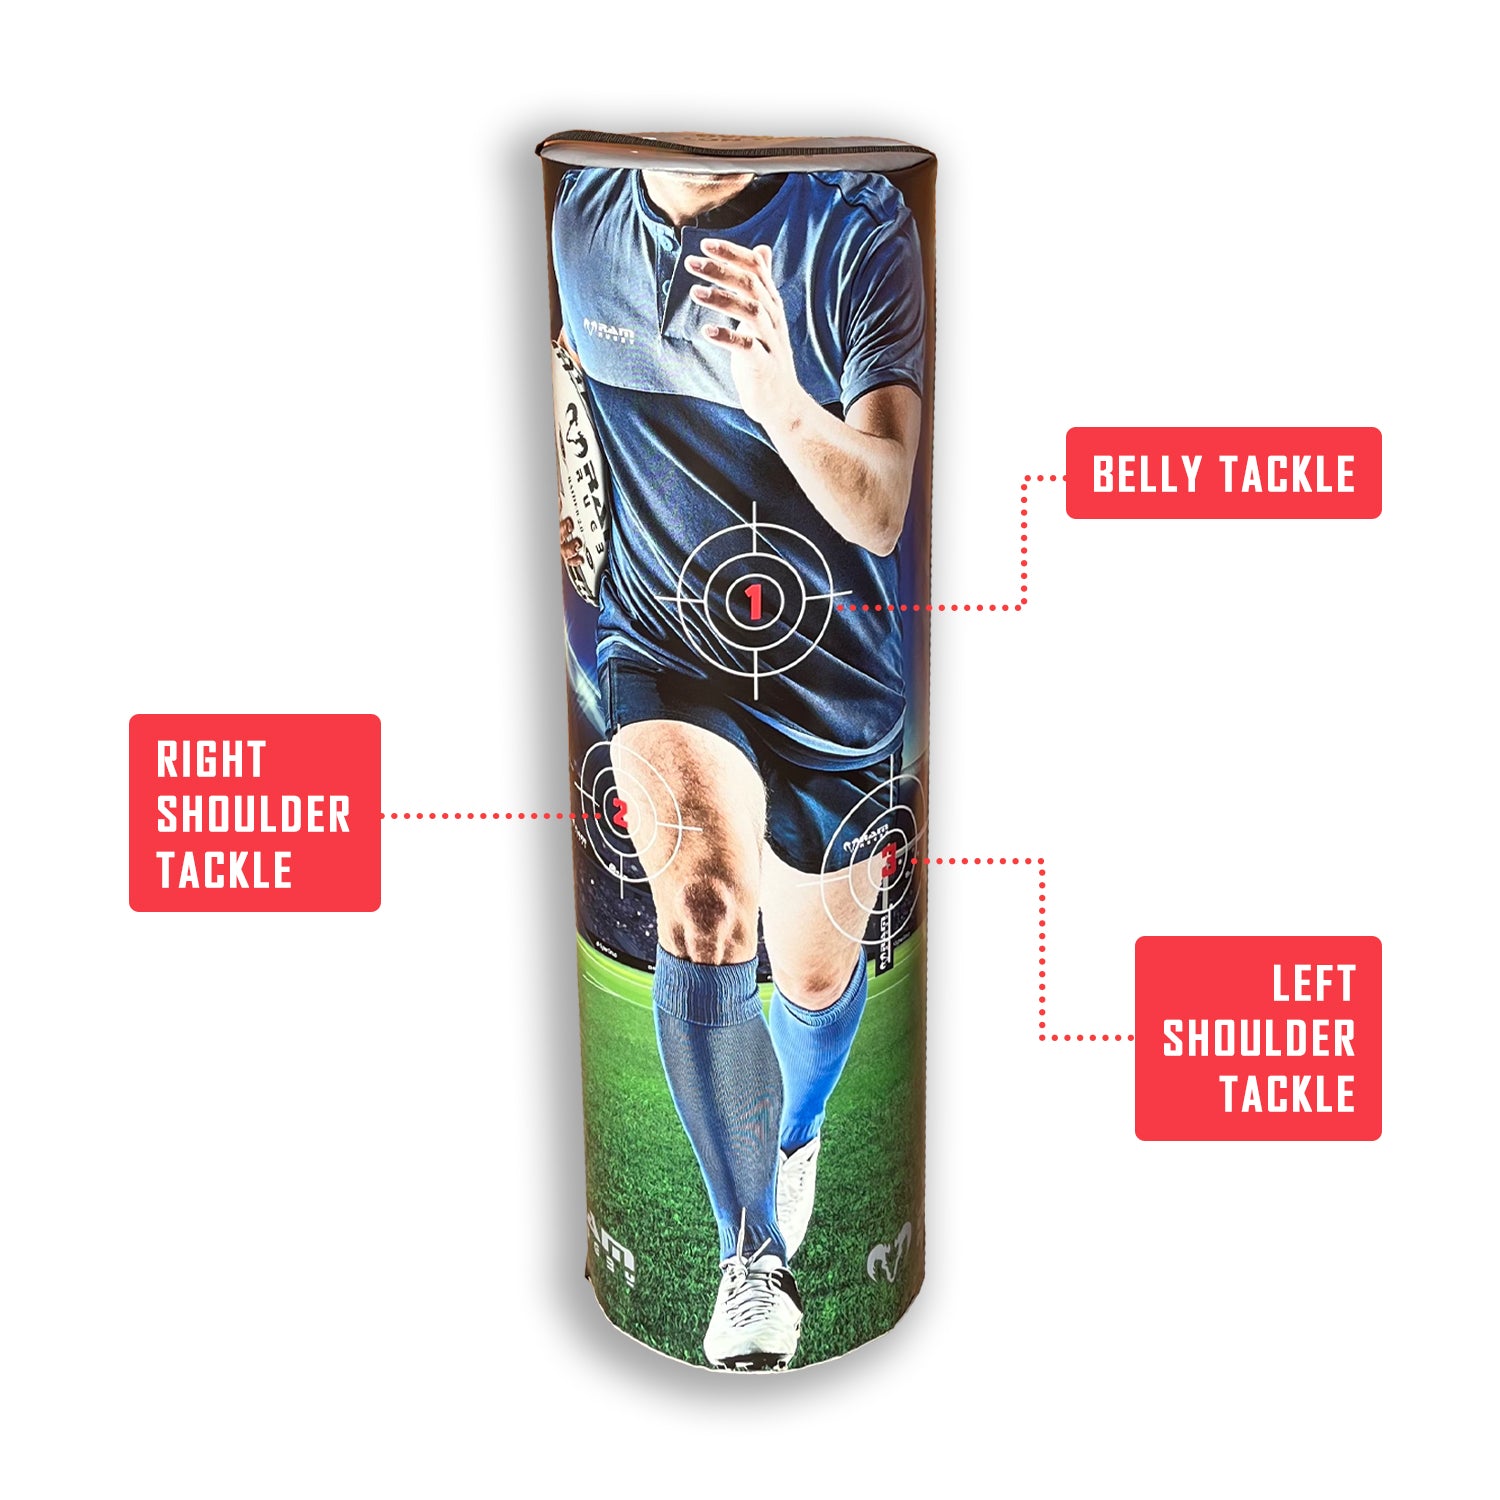 Ram Rugby Target Tackle Bag 28KG, 20KG, 15KG, 10KG, 8KG – Club Quality